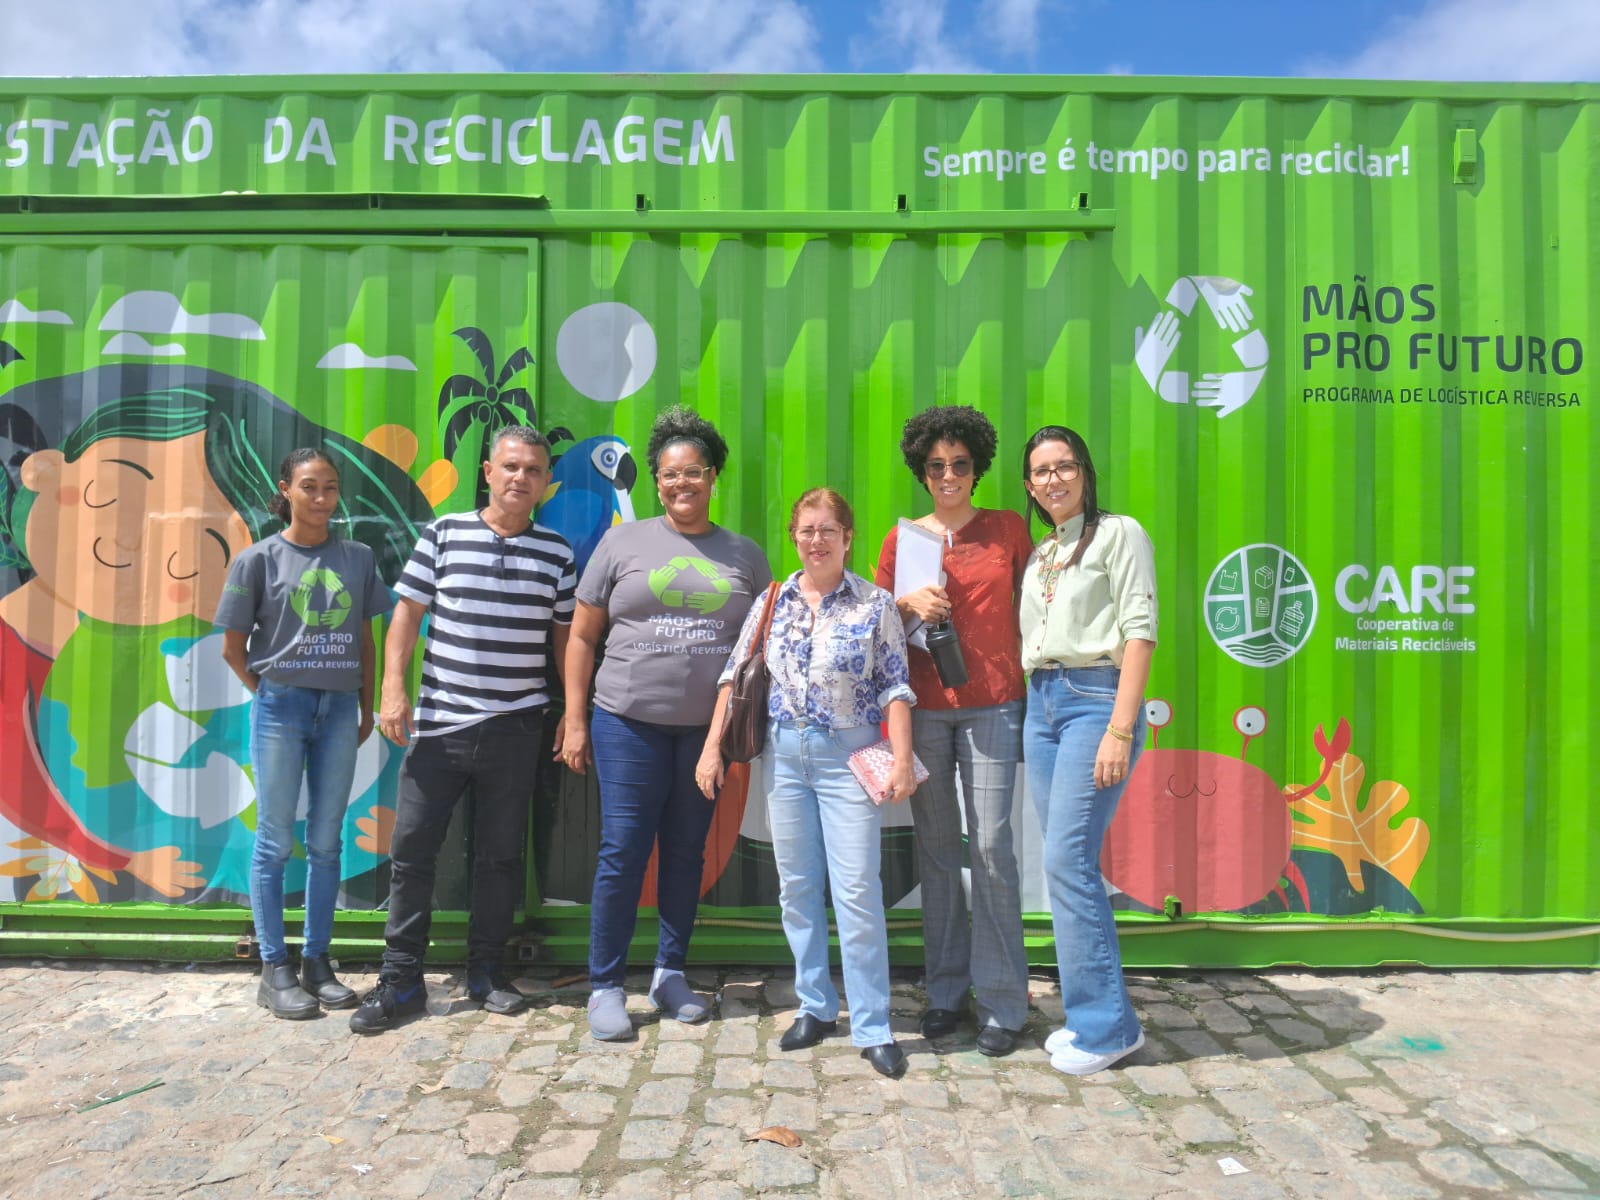 Representantes da Comissão de Sustentabilidade da CMA visitam cooperativa para alinhar recolhimento de material reciclável